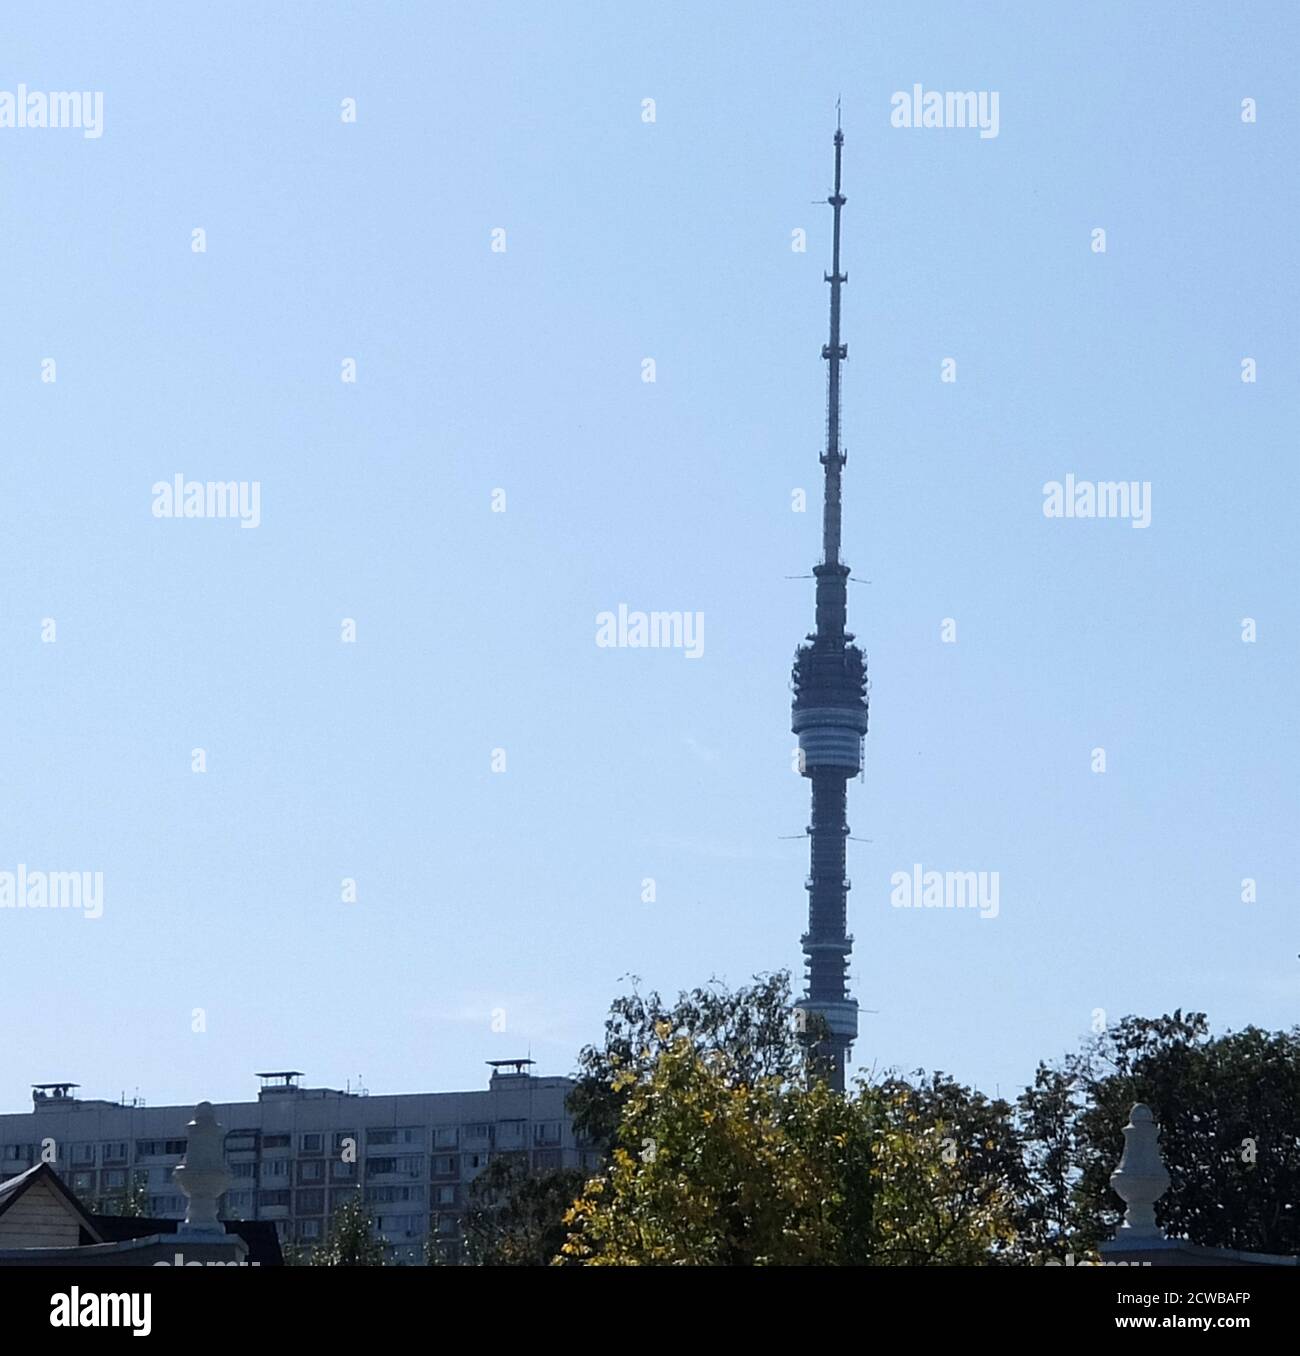 Ostankino Tower ein Fernseh- und Radioturm in Moskau, Russland, im Besitz der Moskauer Niederlassung des einheitlichen Unternehmens Russian TV and Radio Broadcasting Network. Ostankino steht 540.1 Meter (1,772 ft) und wurde von Nikolai Nikitin entworfen. Es ist derzeit die höchste freistehende Struktur in Europa Stockfoto